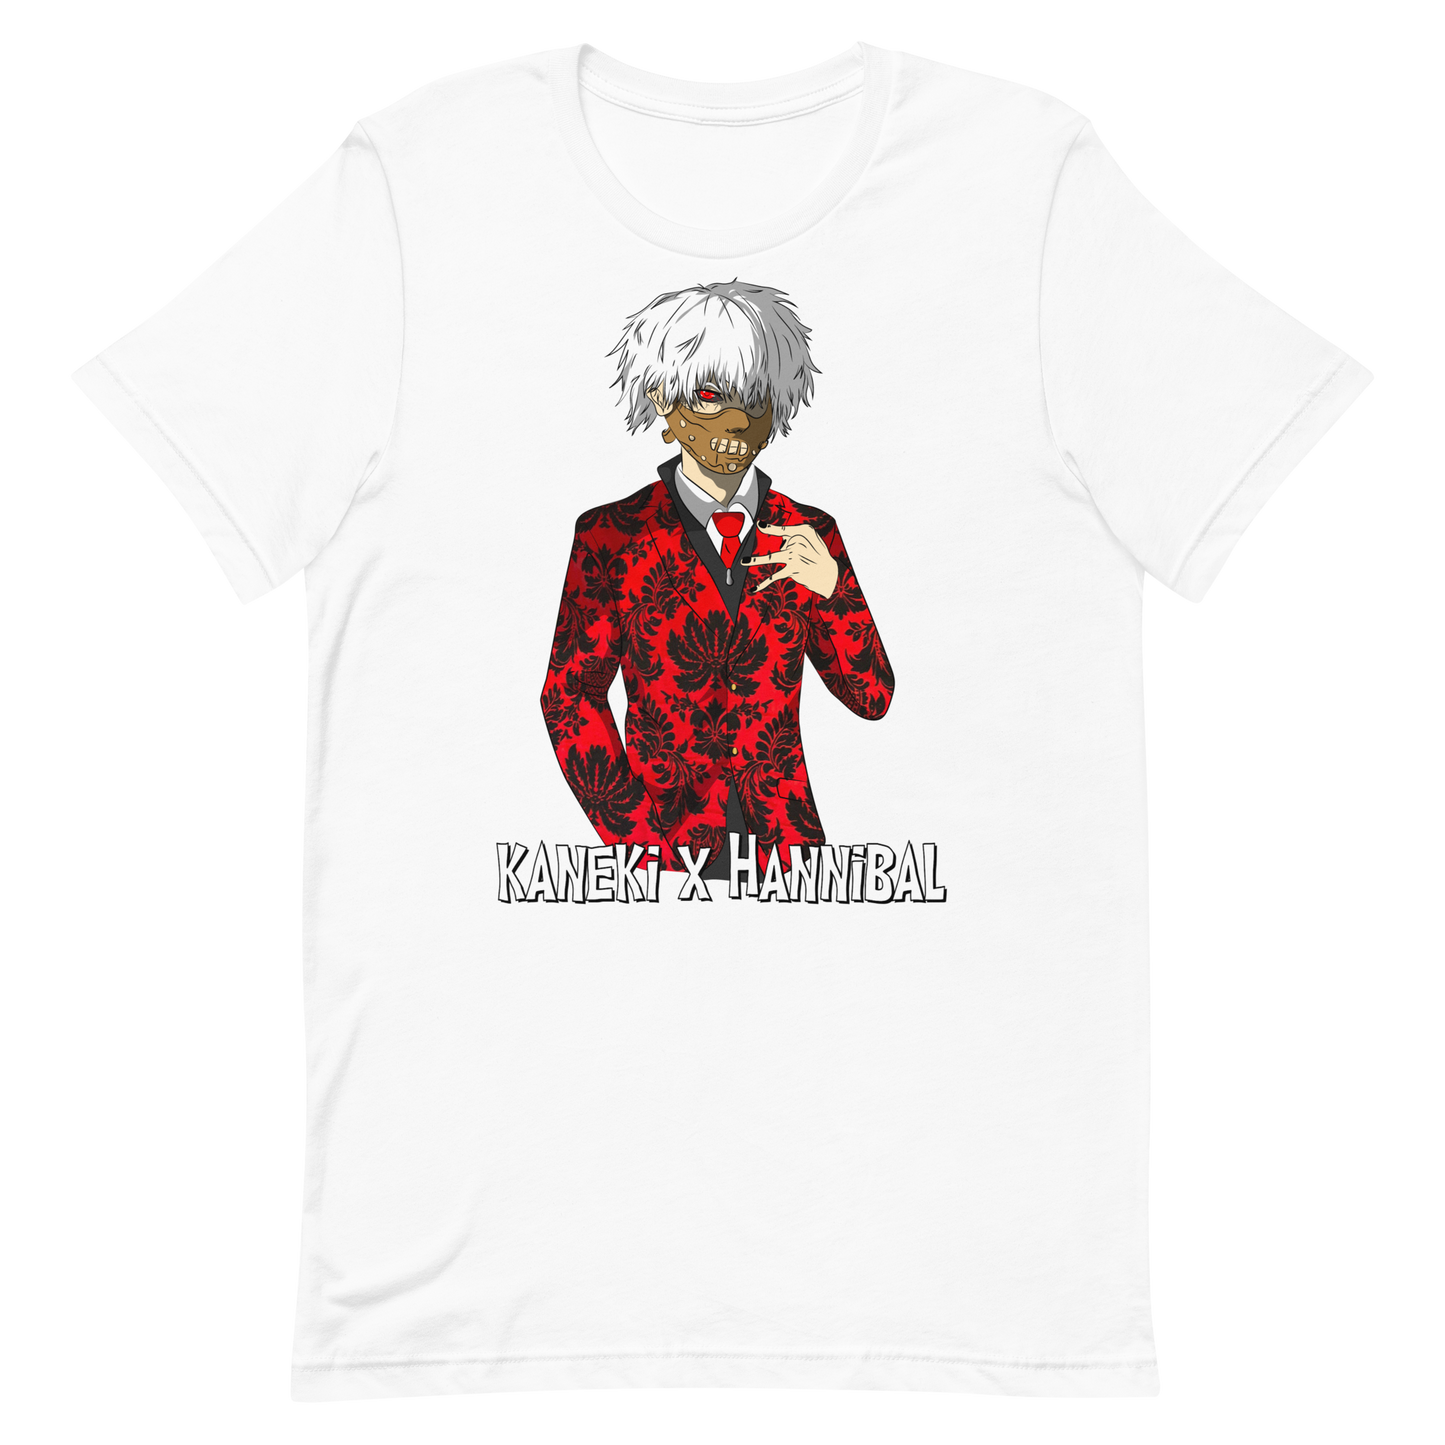 Kaneki X Hannibal t-shirt